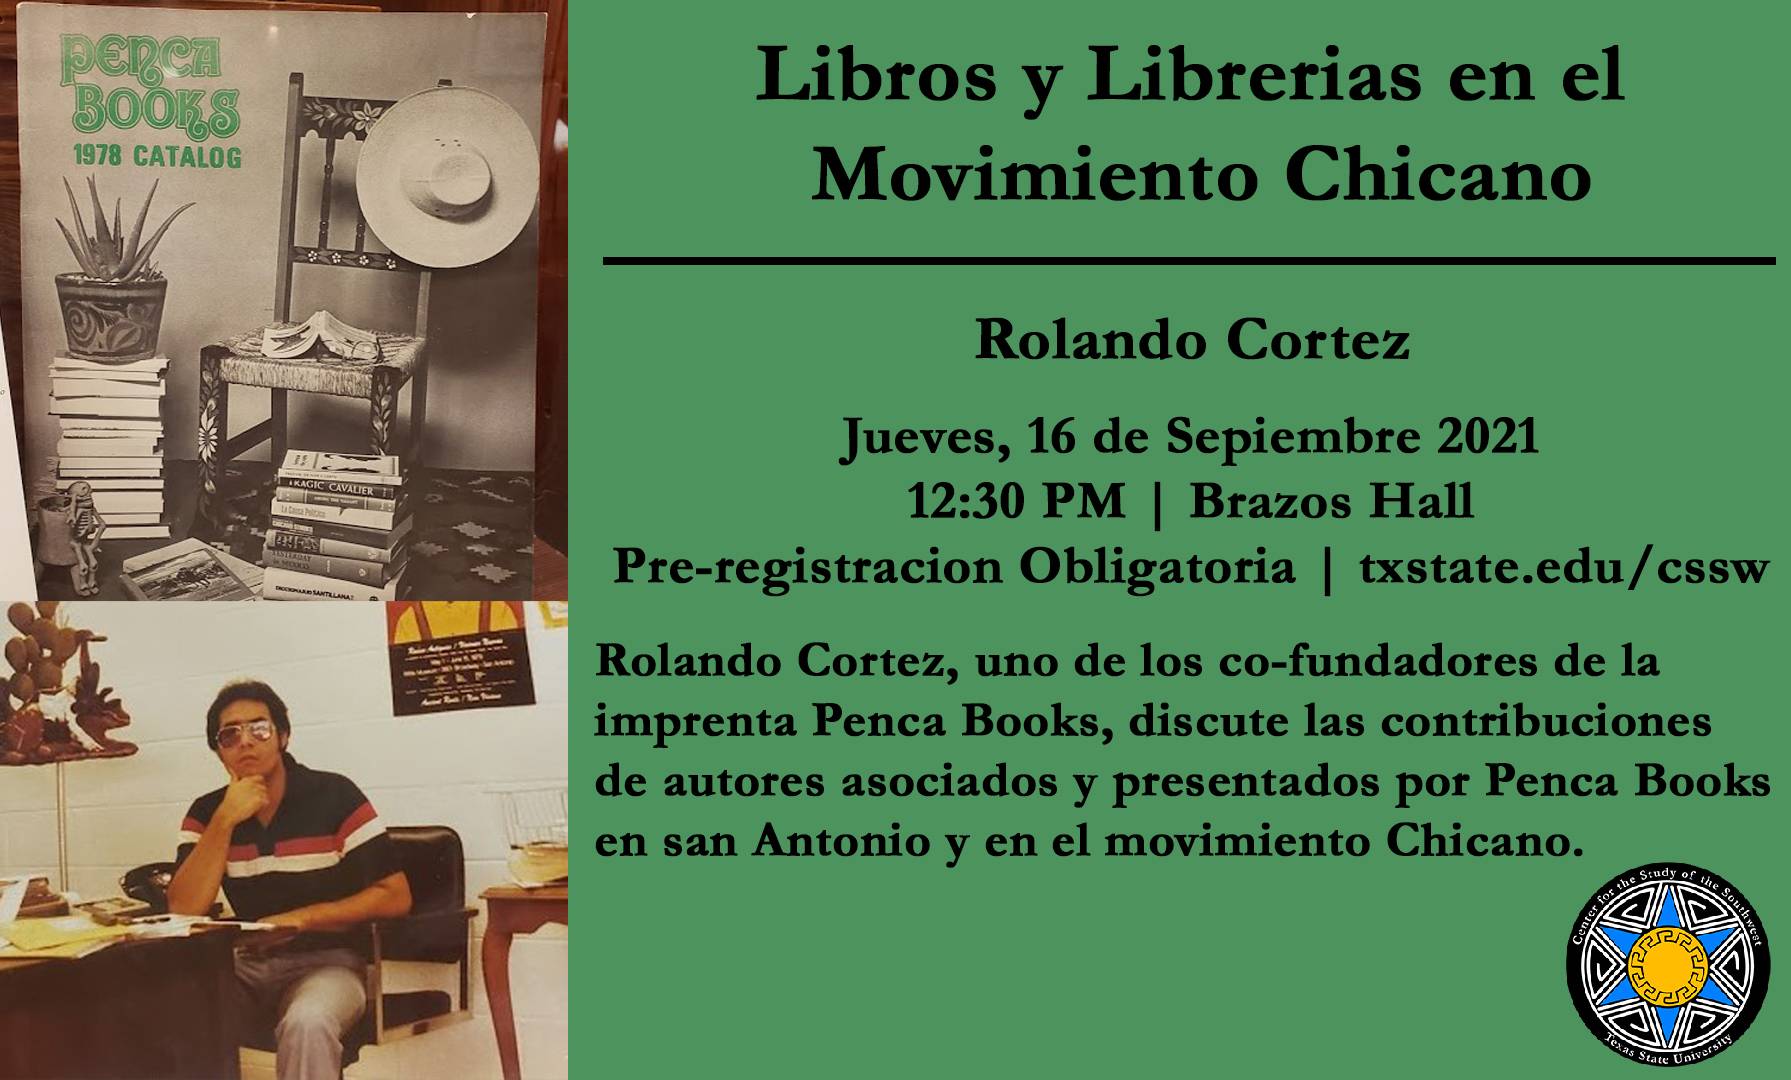 Libros y librerías en el Movimiento Chicano